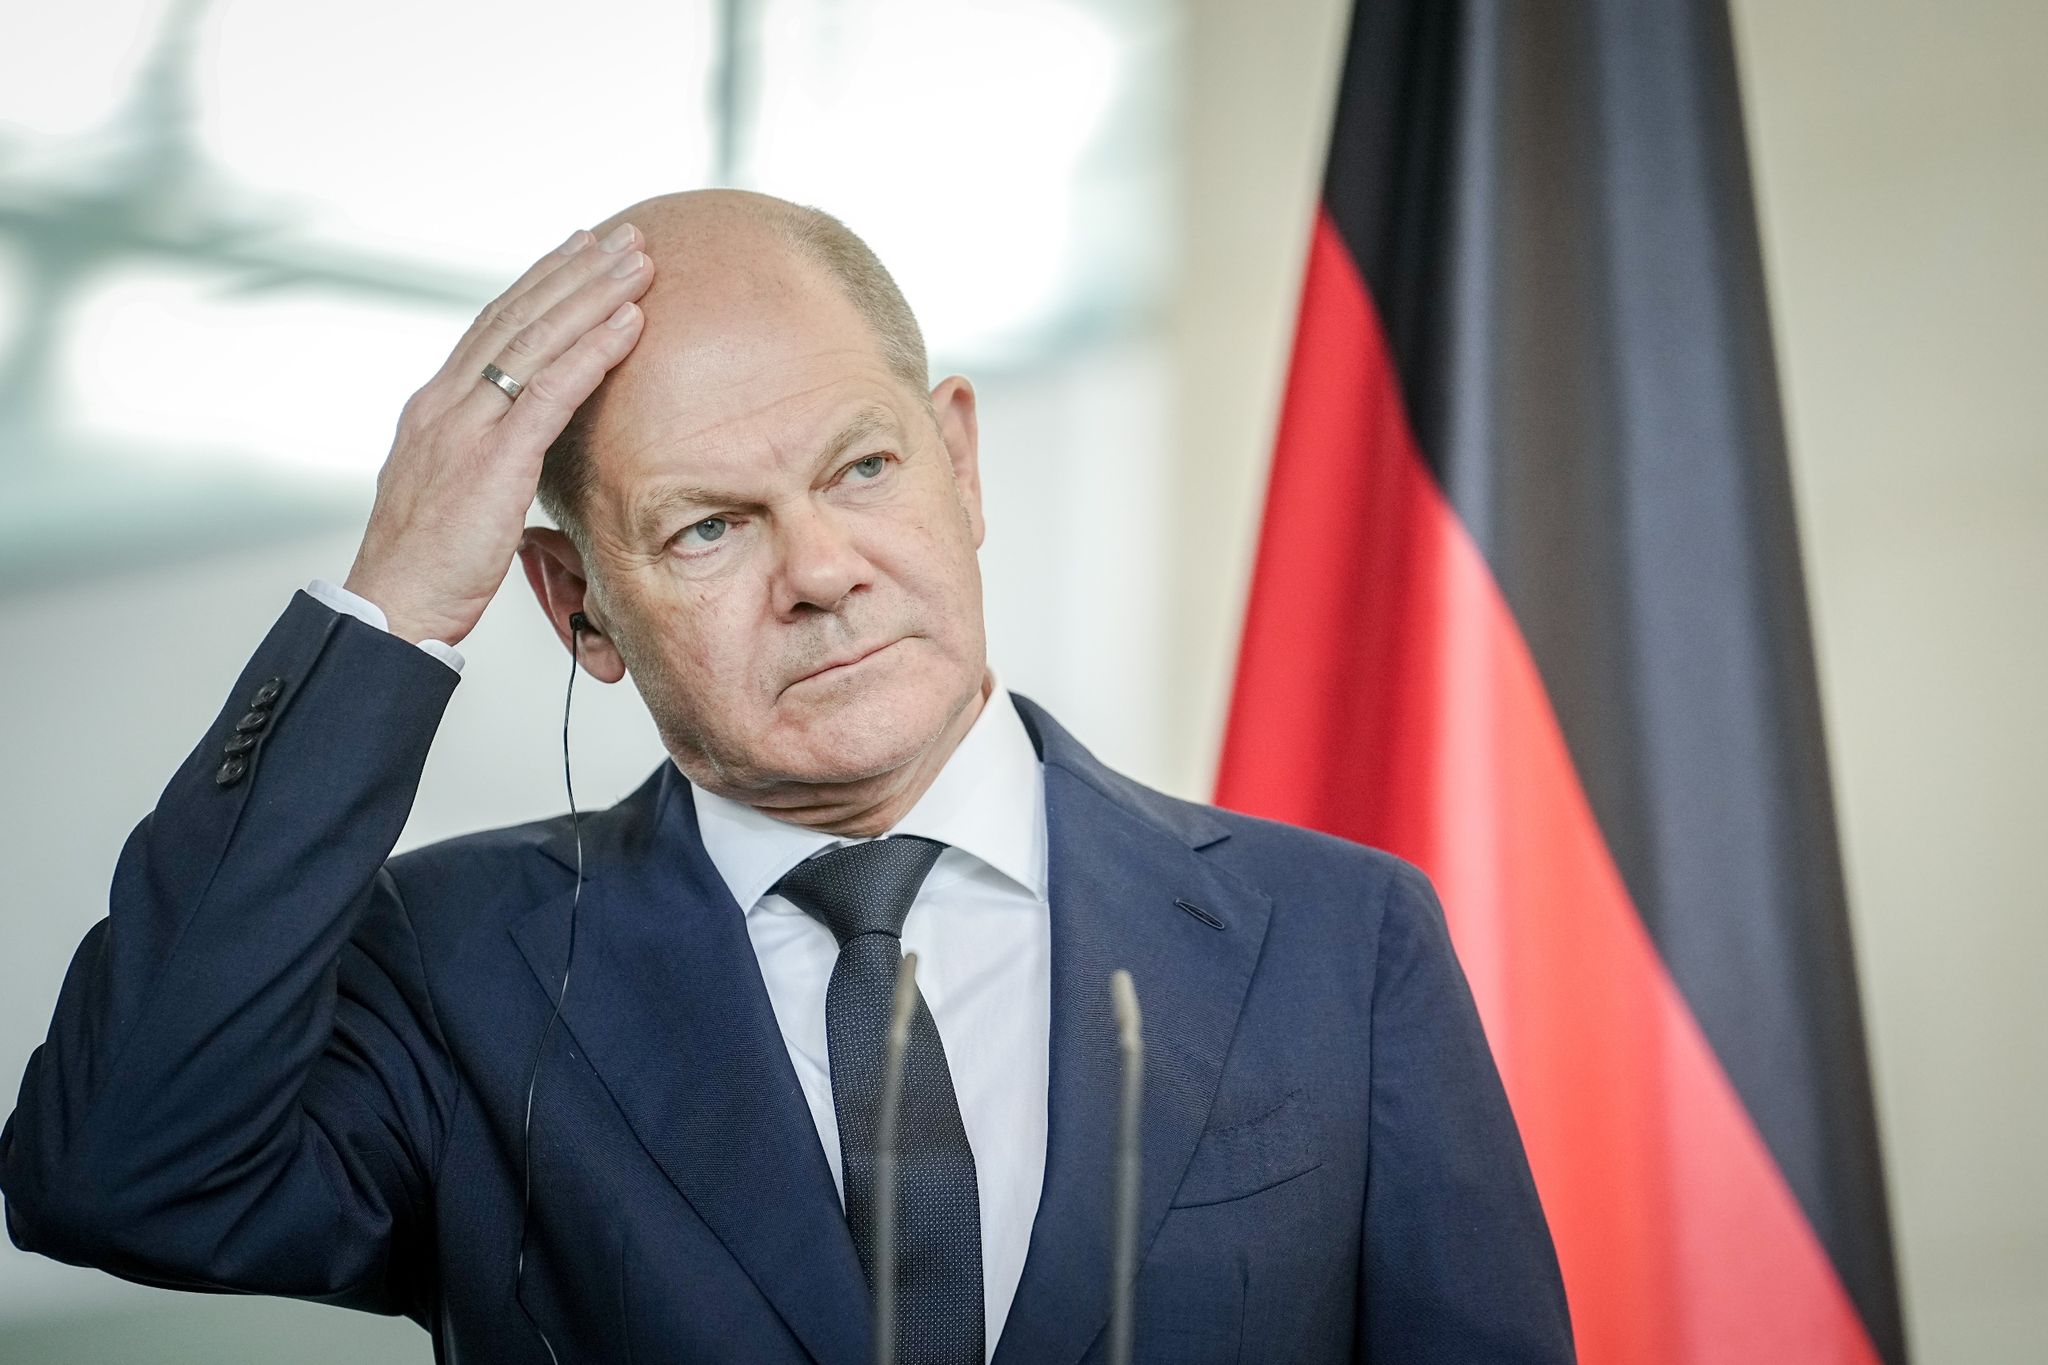 Bundeskanzler Olaf Scholz wurde bei dem Zwischenfall nicht verletzt. (© Kay Nietfeld/dpa)